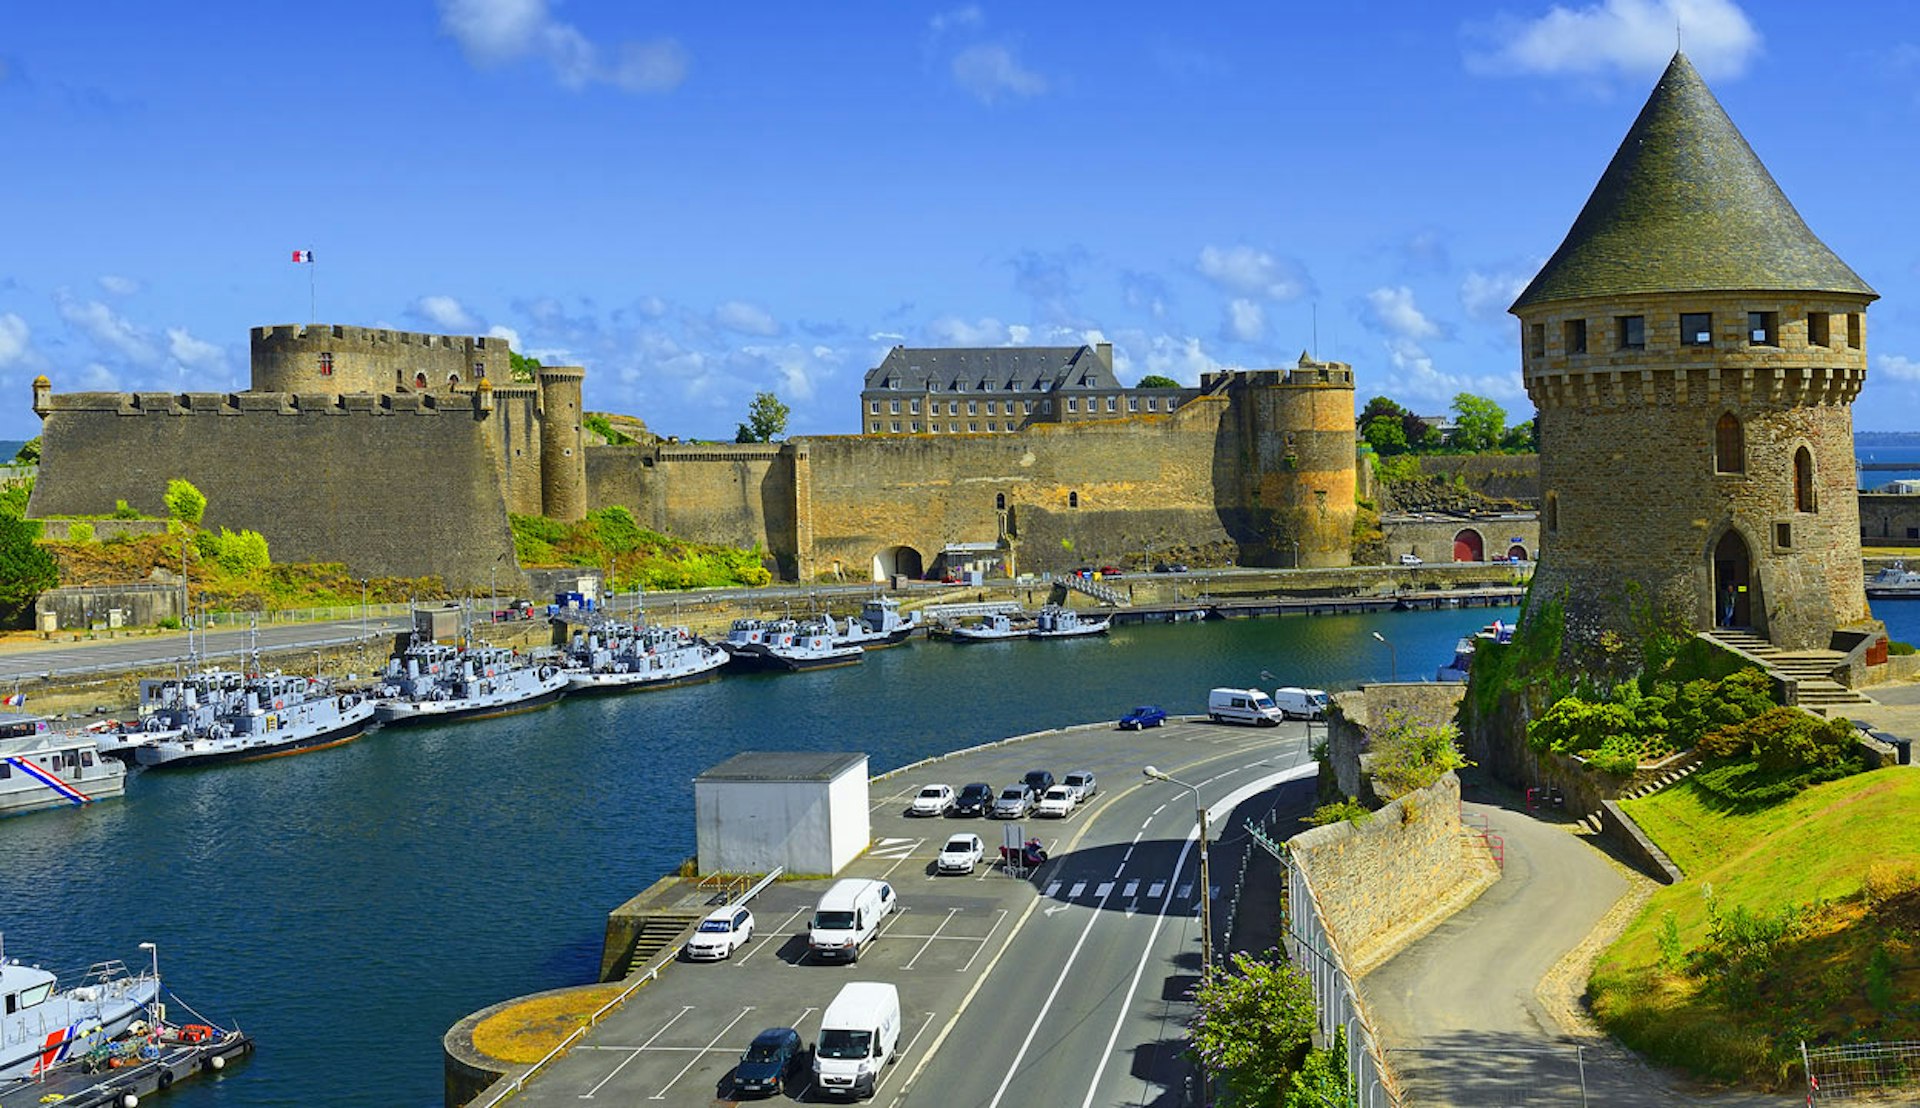 Gamla slottet vackert beläget vid vattnet i Brest, Frankrike.